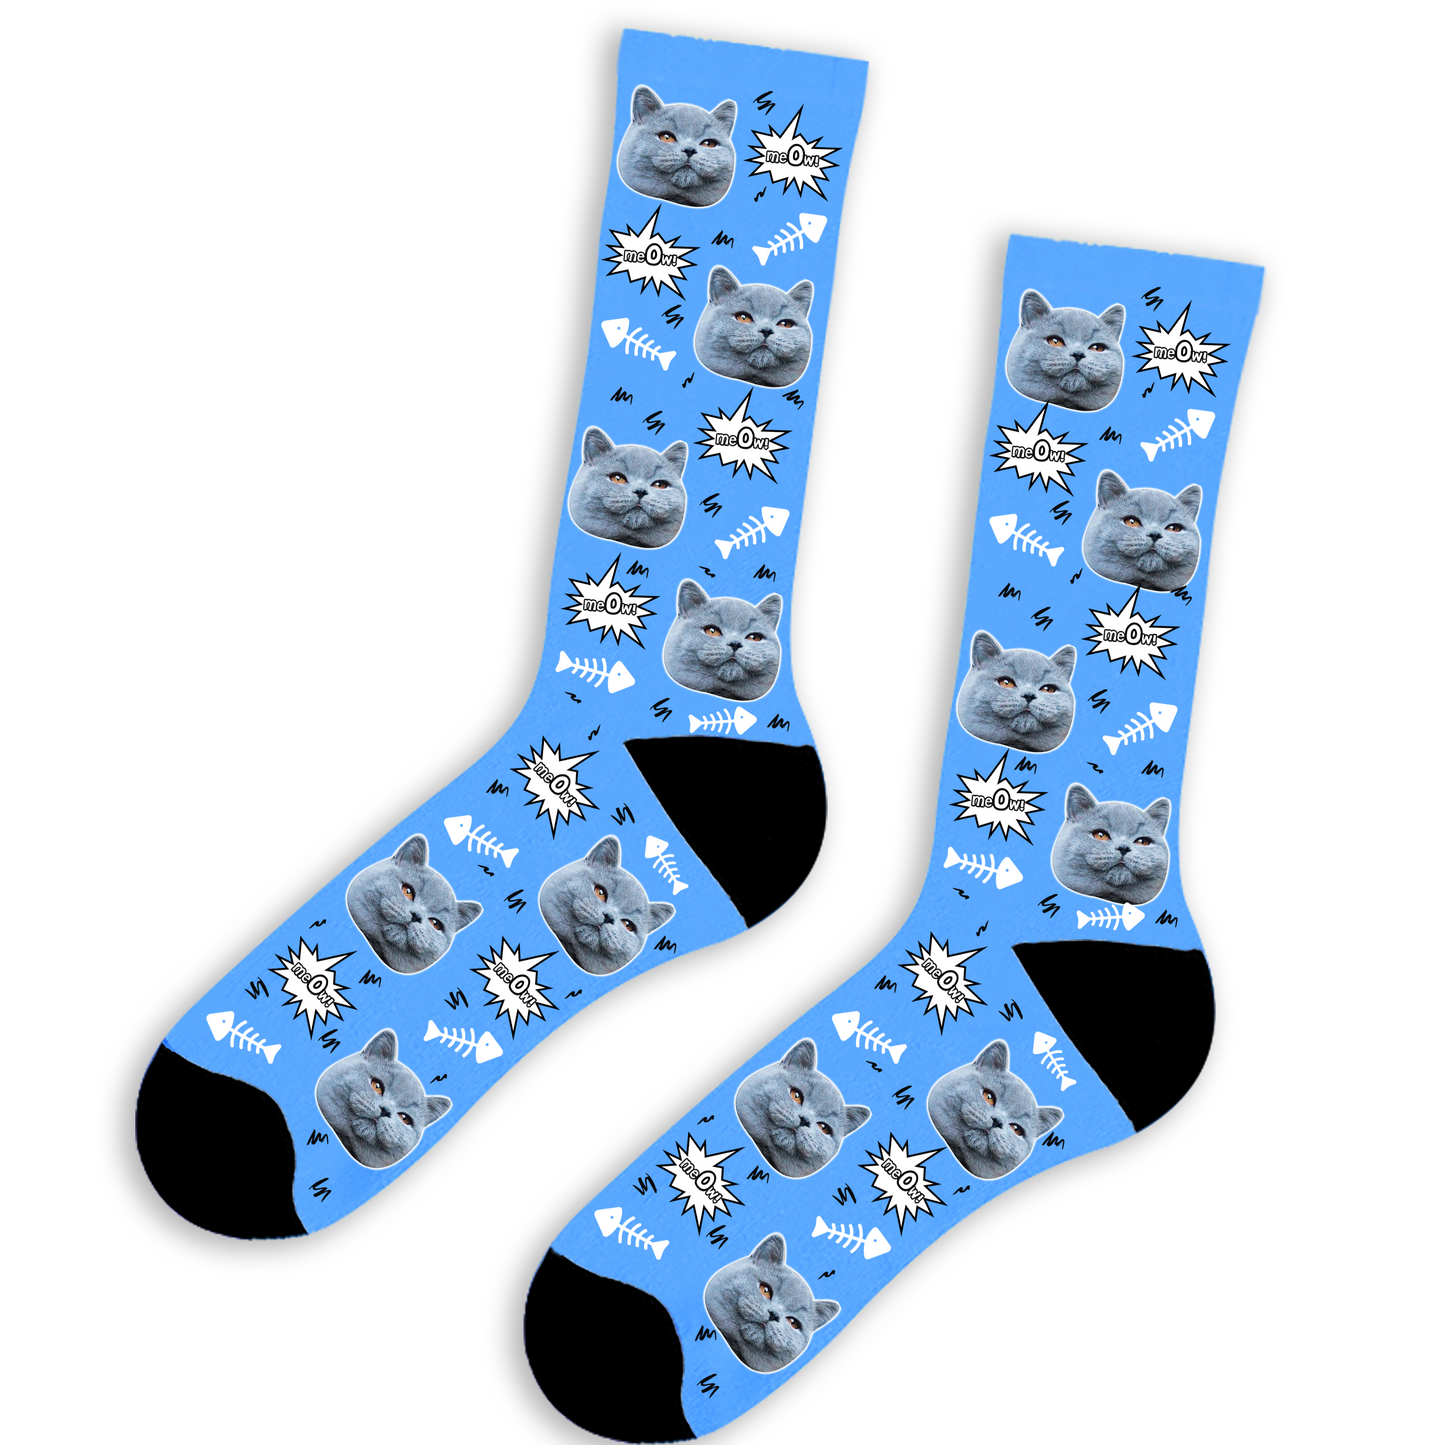 Meow Face Socks